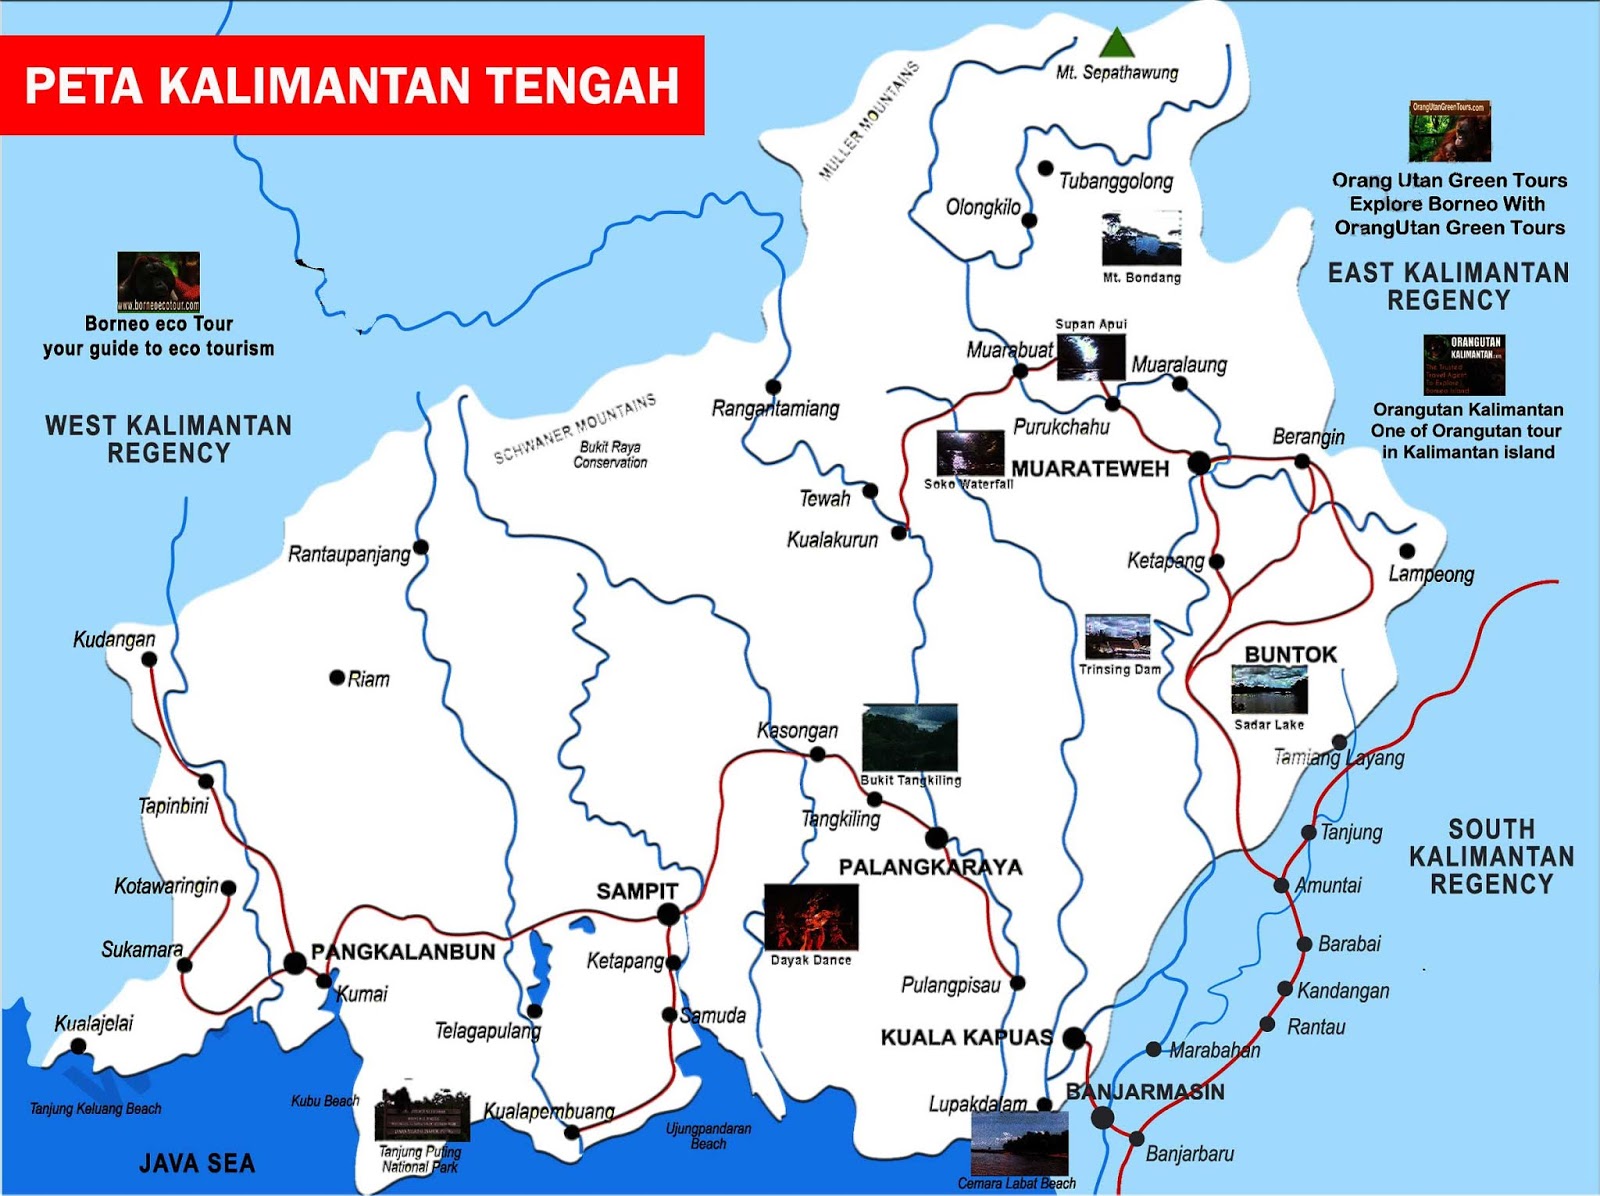 Peta Kalimantan Tengah Lengkap Nama Kabupaten Dan Kota Web Sejarah My